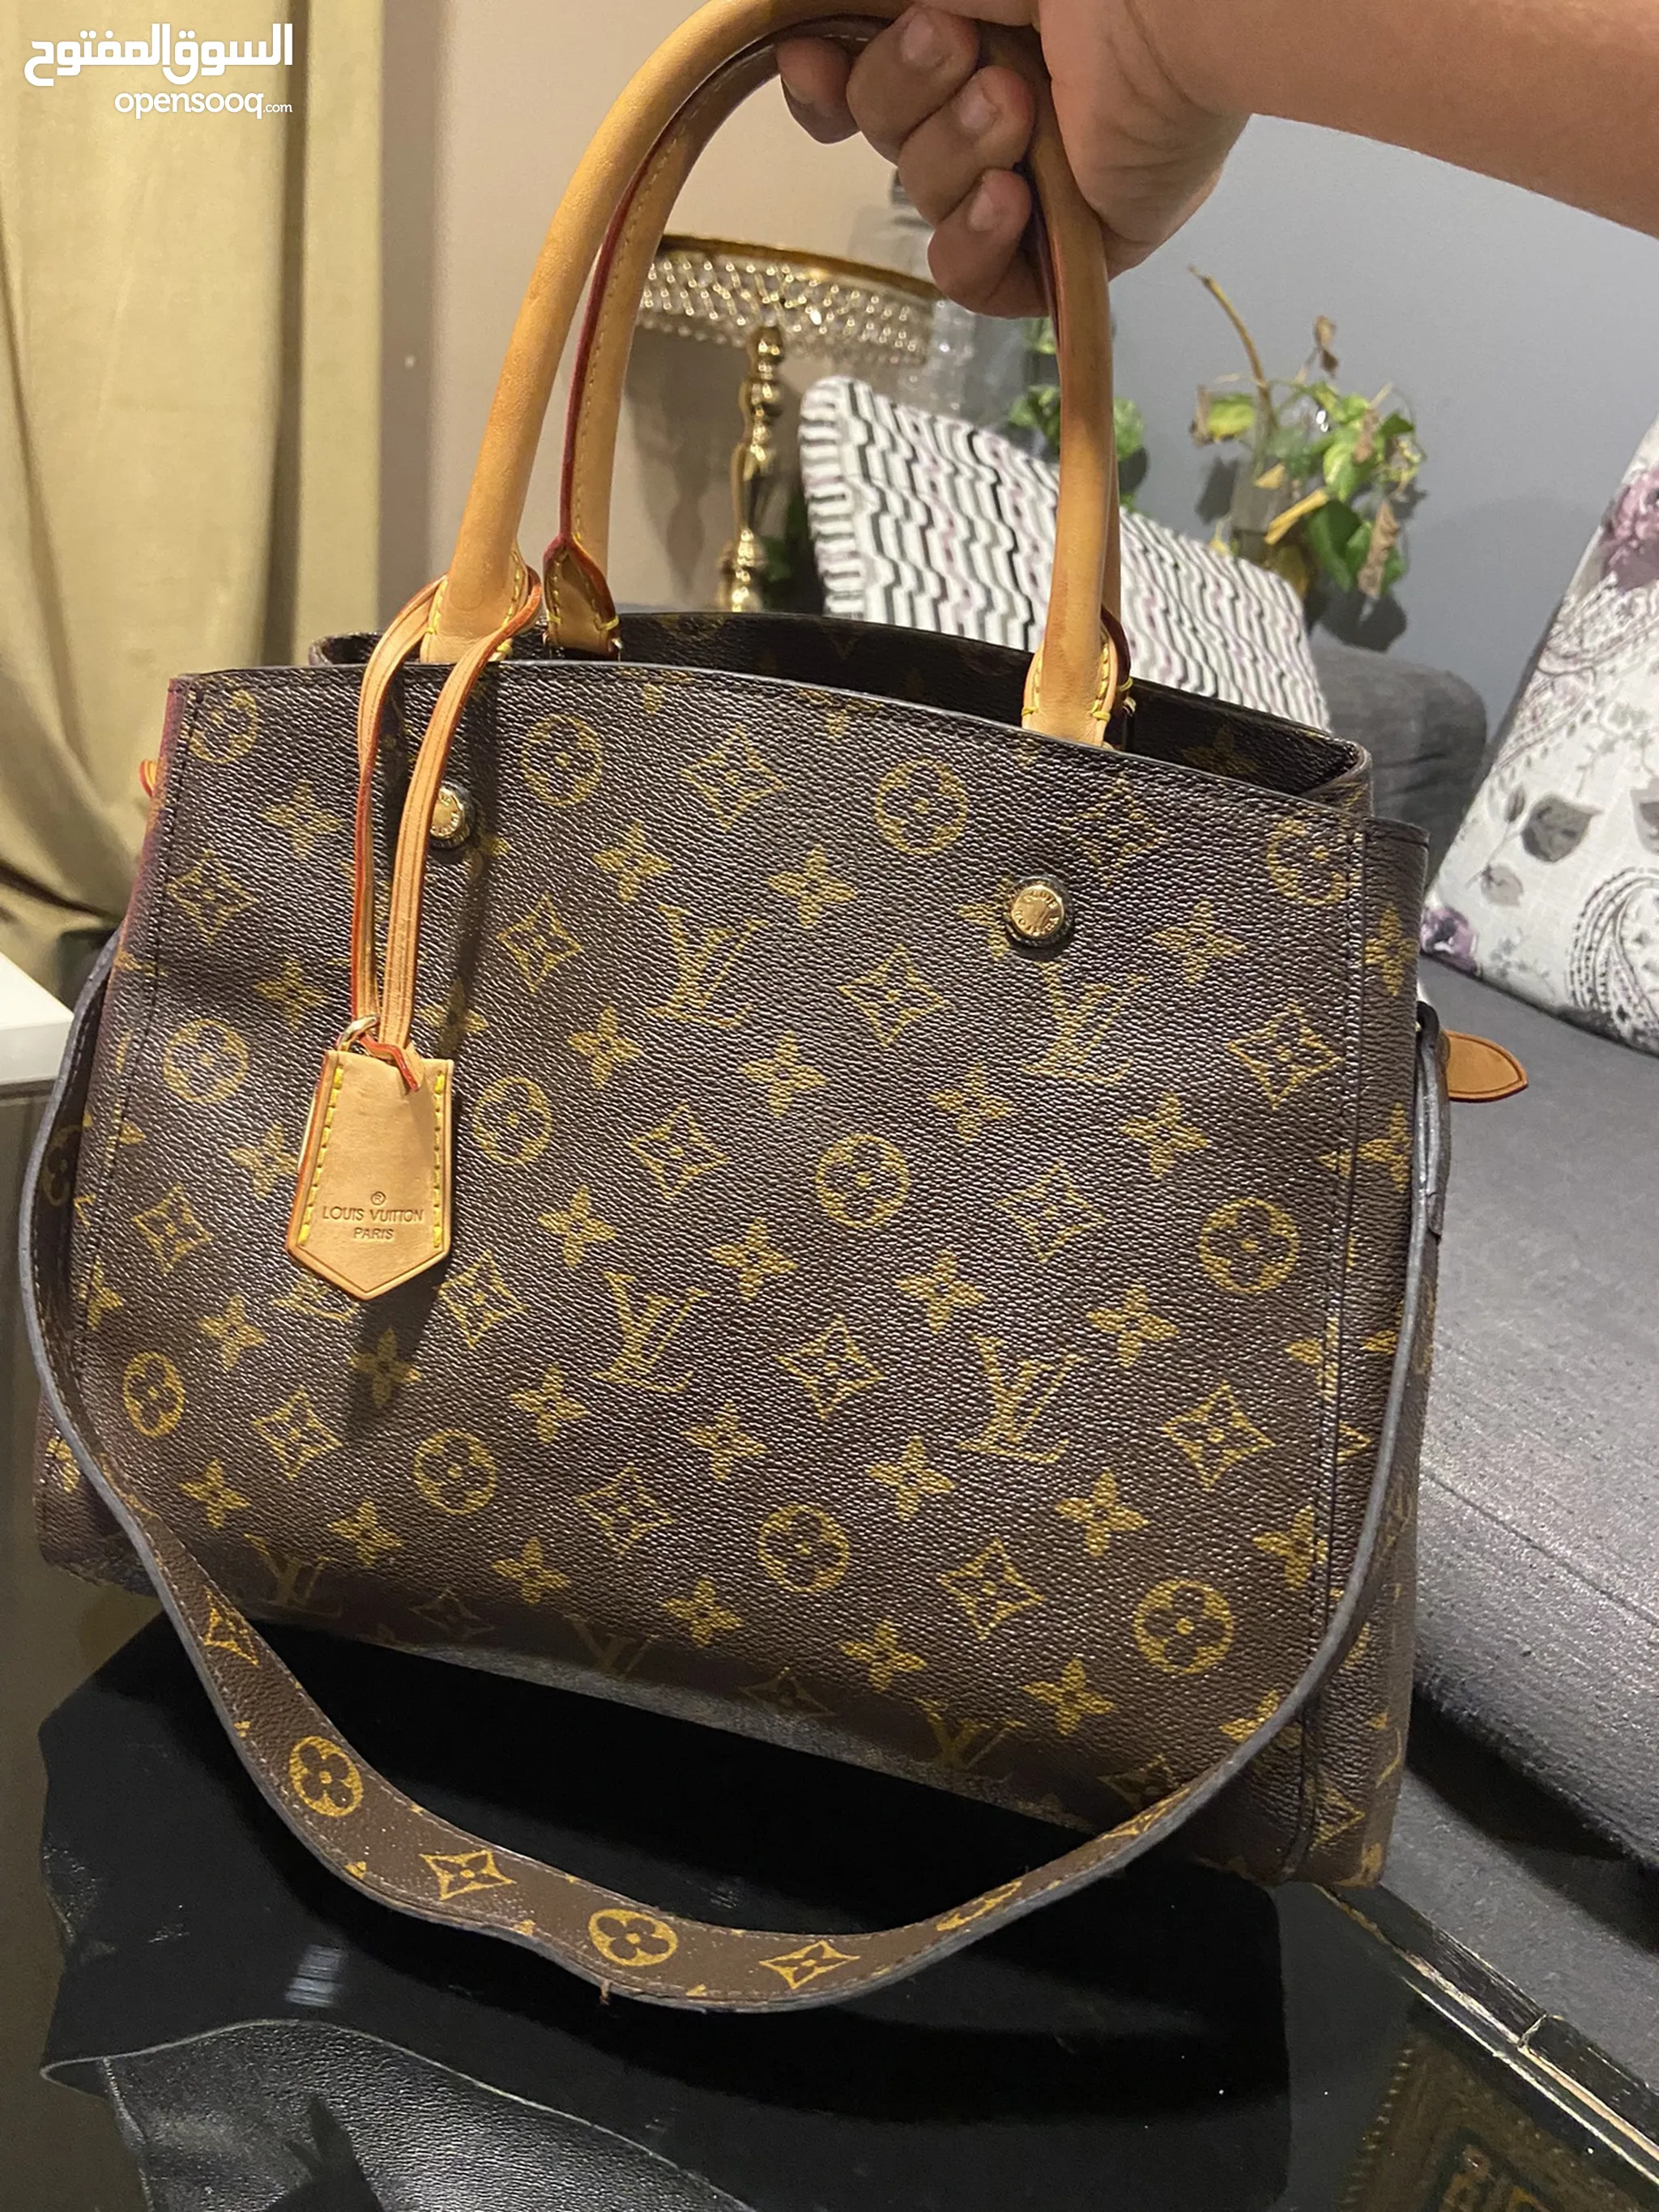 Buy Kinue Fashion Tote Bag Female My Other Bag is Chanel Canvas Shoulder Bag  Simple Light File Shopping Travel Handbag (Black) Online at desertcartKUWAIT